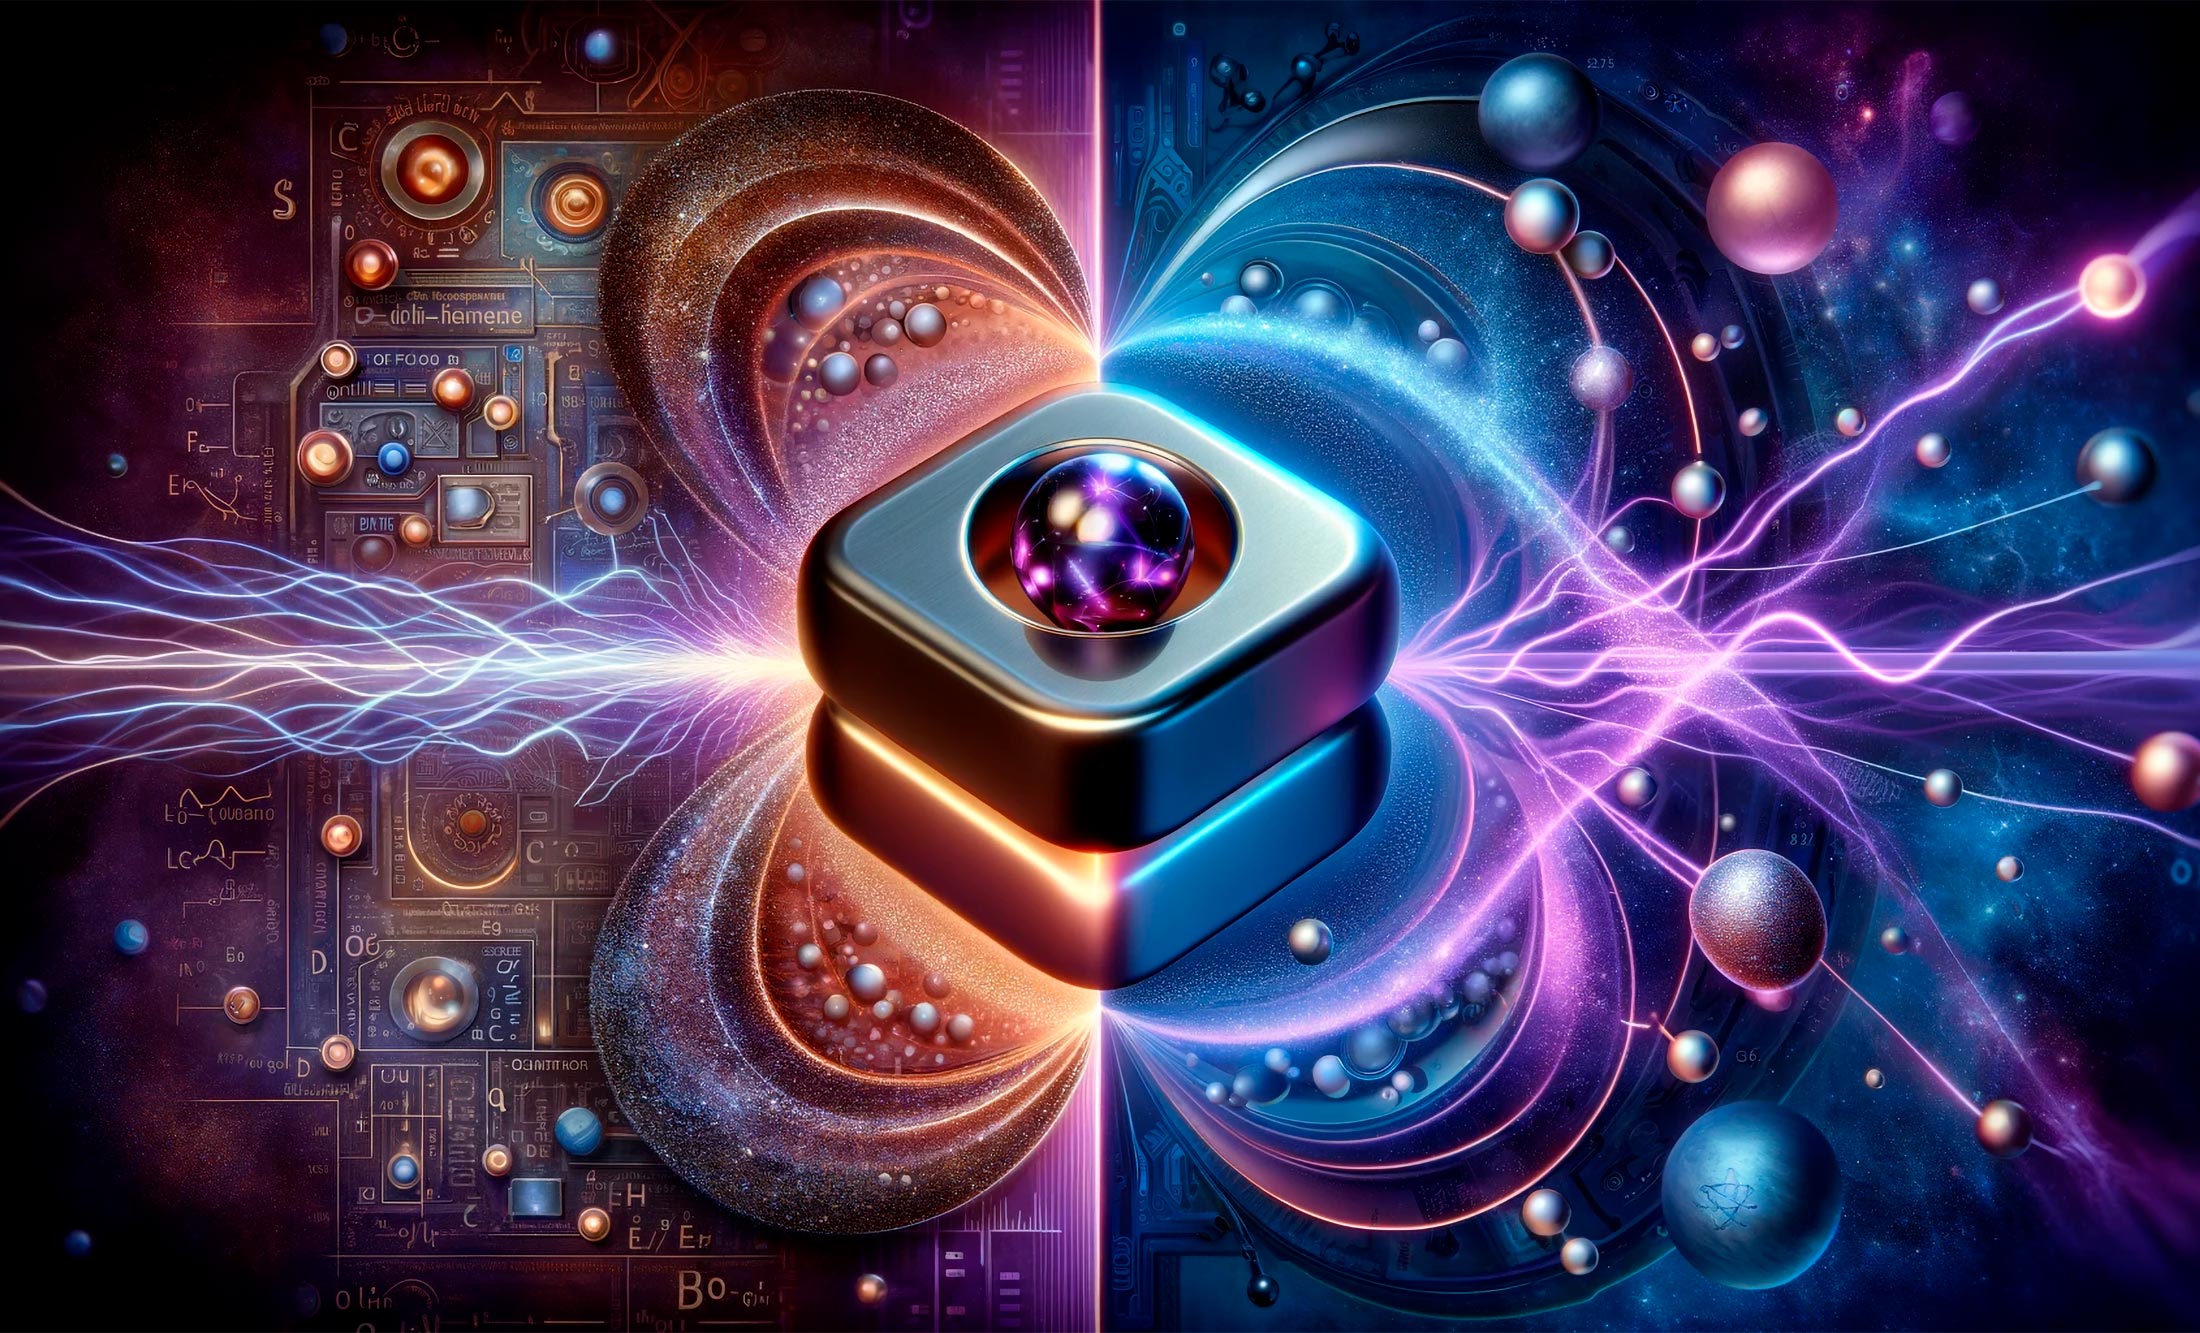 يكشف “Purple Bronze Discovery” عن “المفتاح المثالي” لتكنولوجيا المستقبل